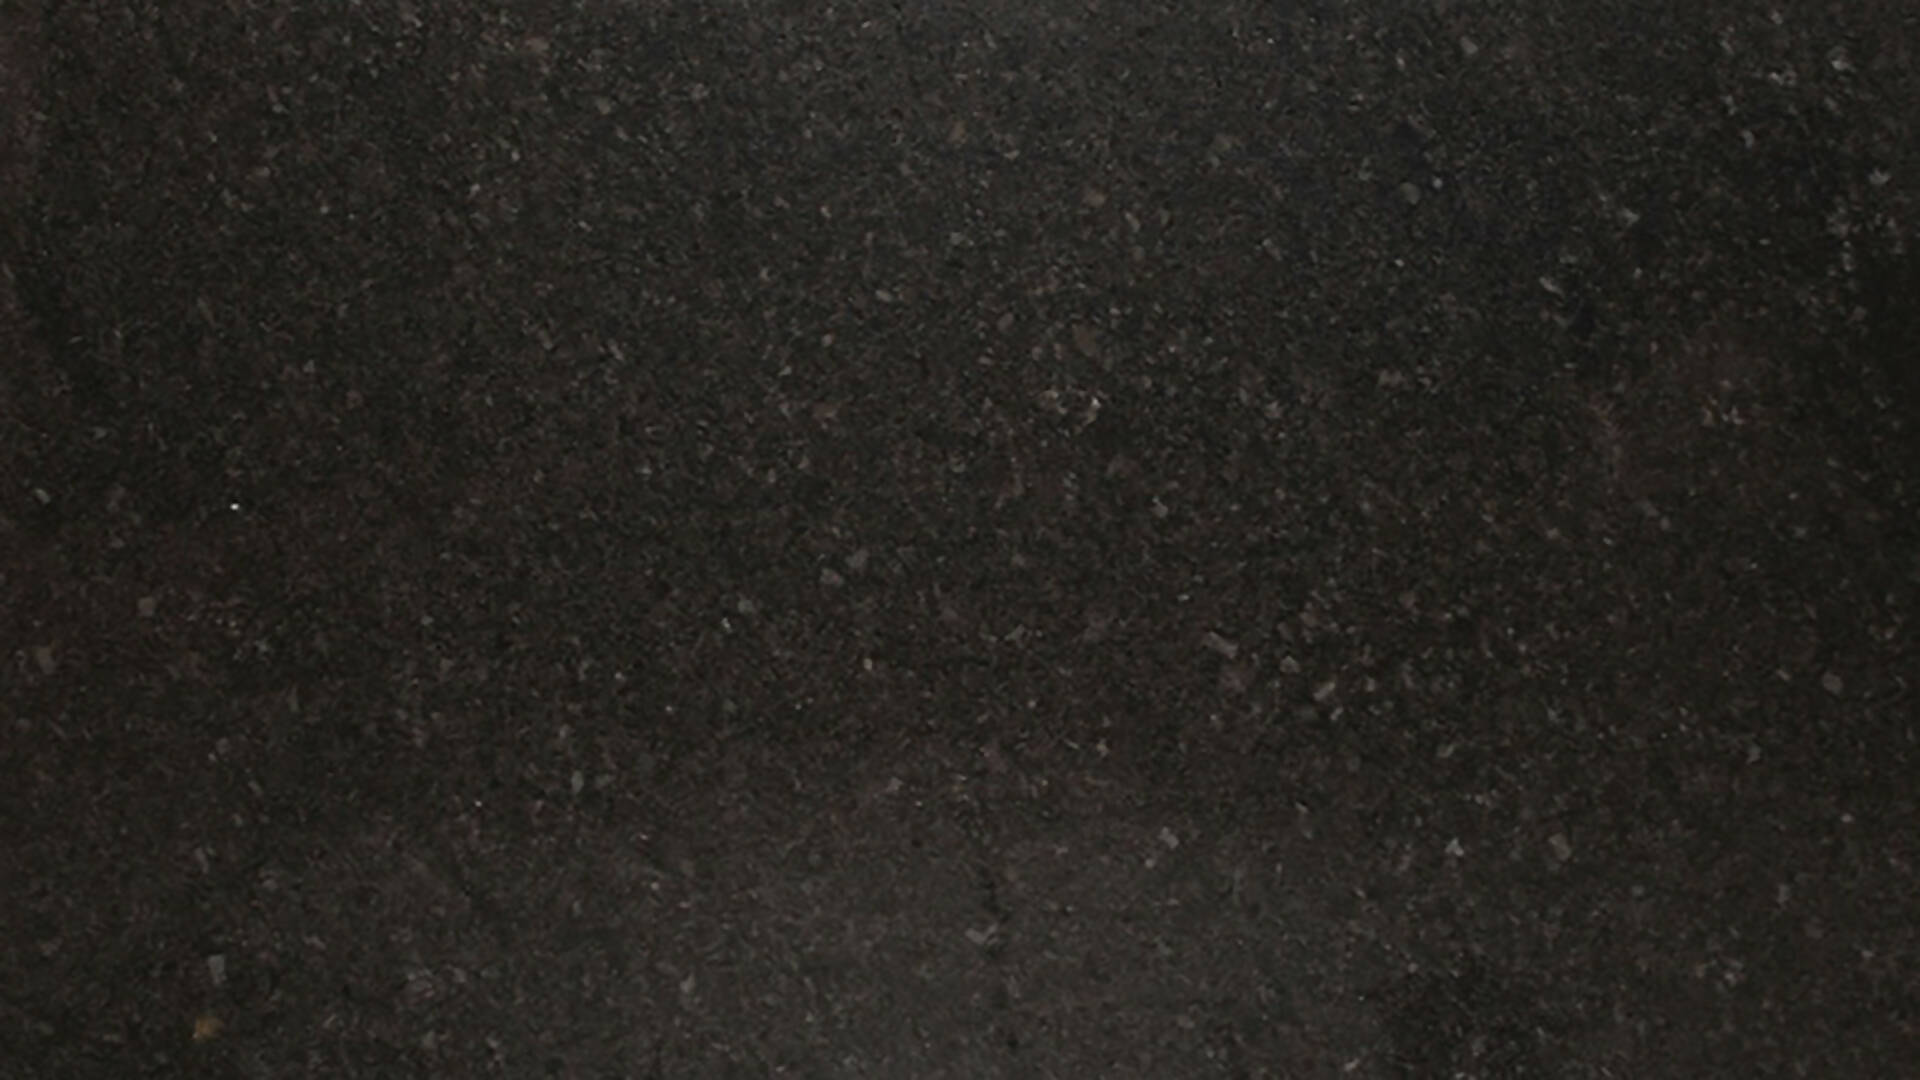 STEEL GREY CARESS GRANITE,Granite,KSG UK LTD,www.work-tops.com